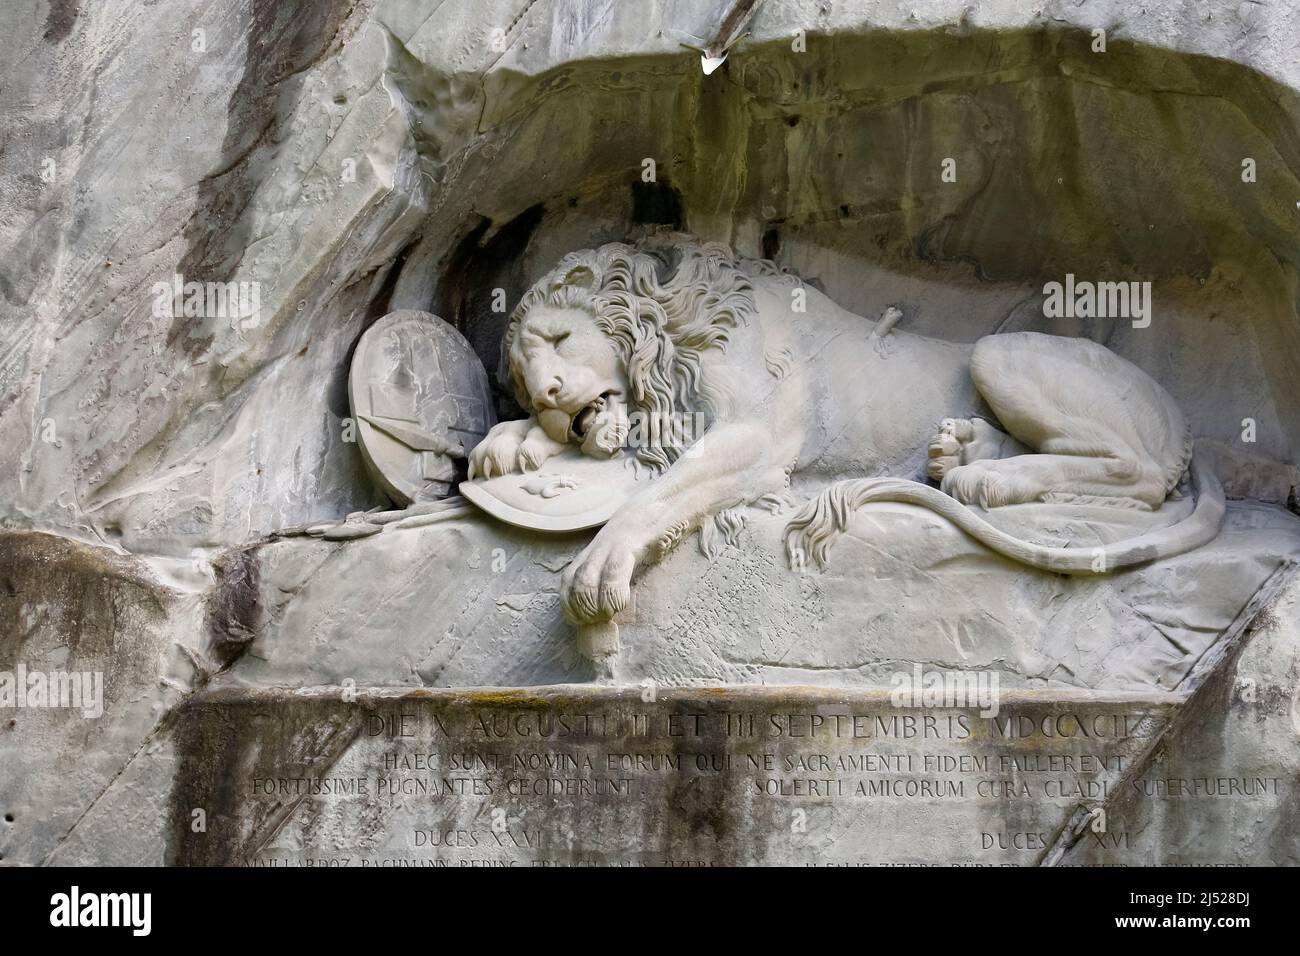 Lucerna, Suiza - 04 de mayo de 2016: El Monumento al León Moribundo, el León de Lucerna, es un famoso relieve rocoso. Esta obra maestra de los Danis Foto de stock